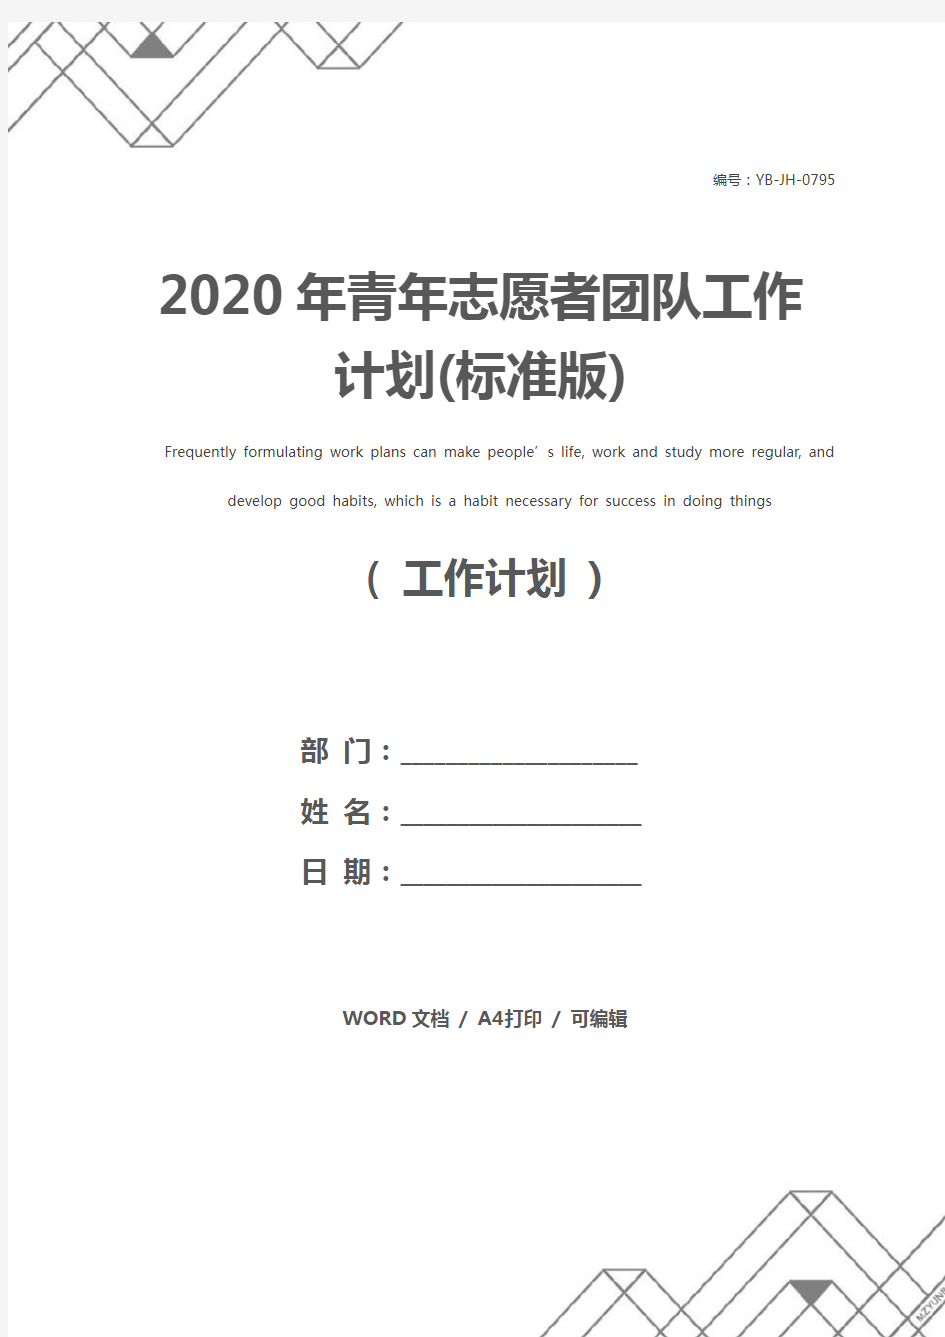 2020年青年志愿者团队工作计划(标准版)